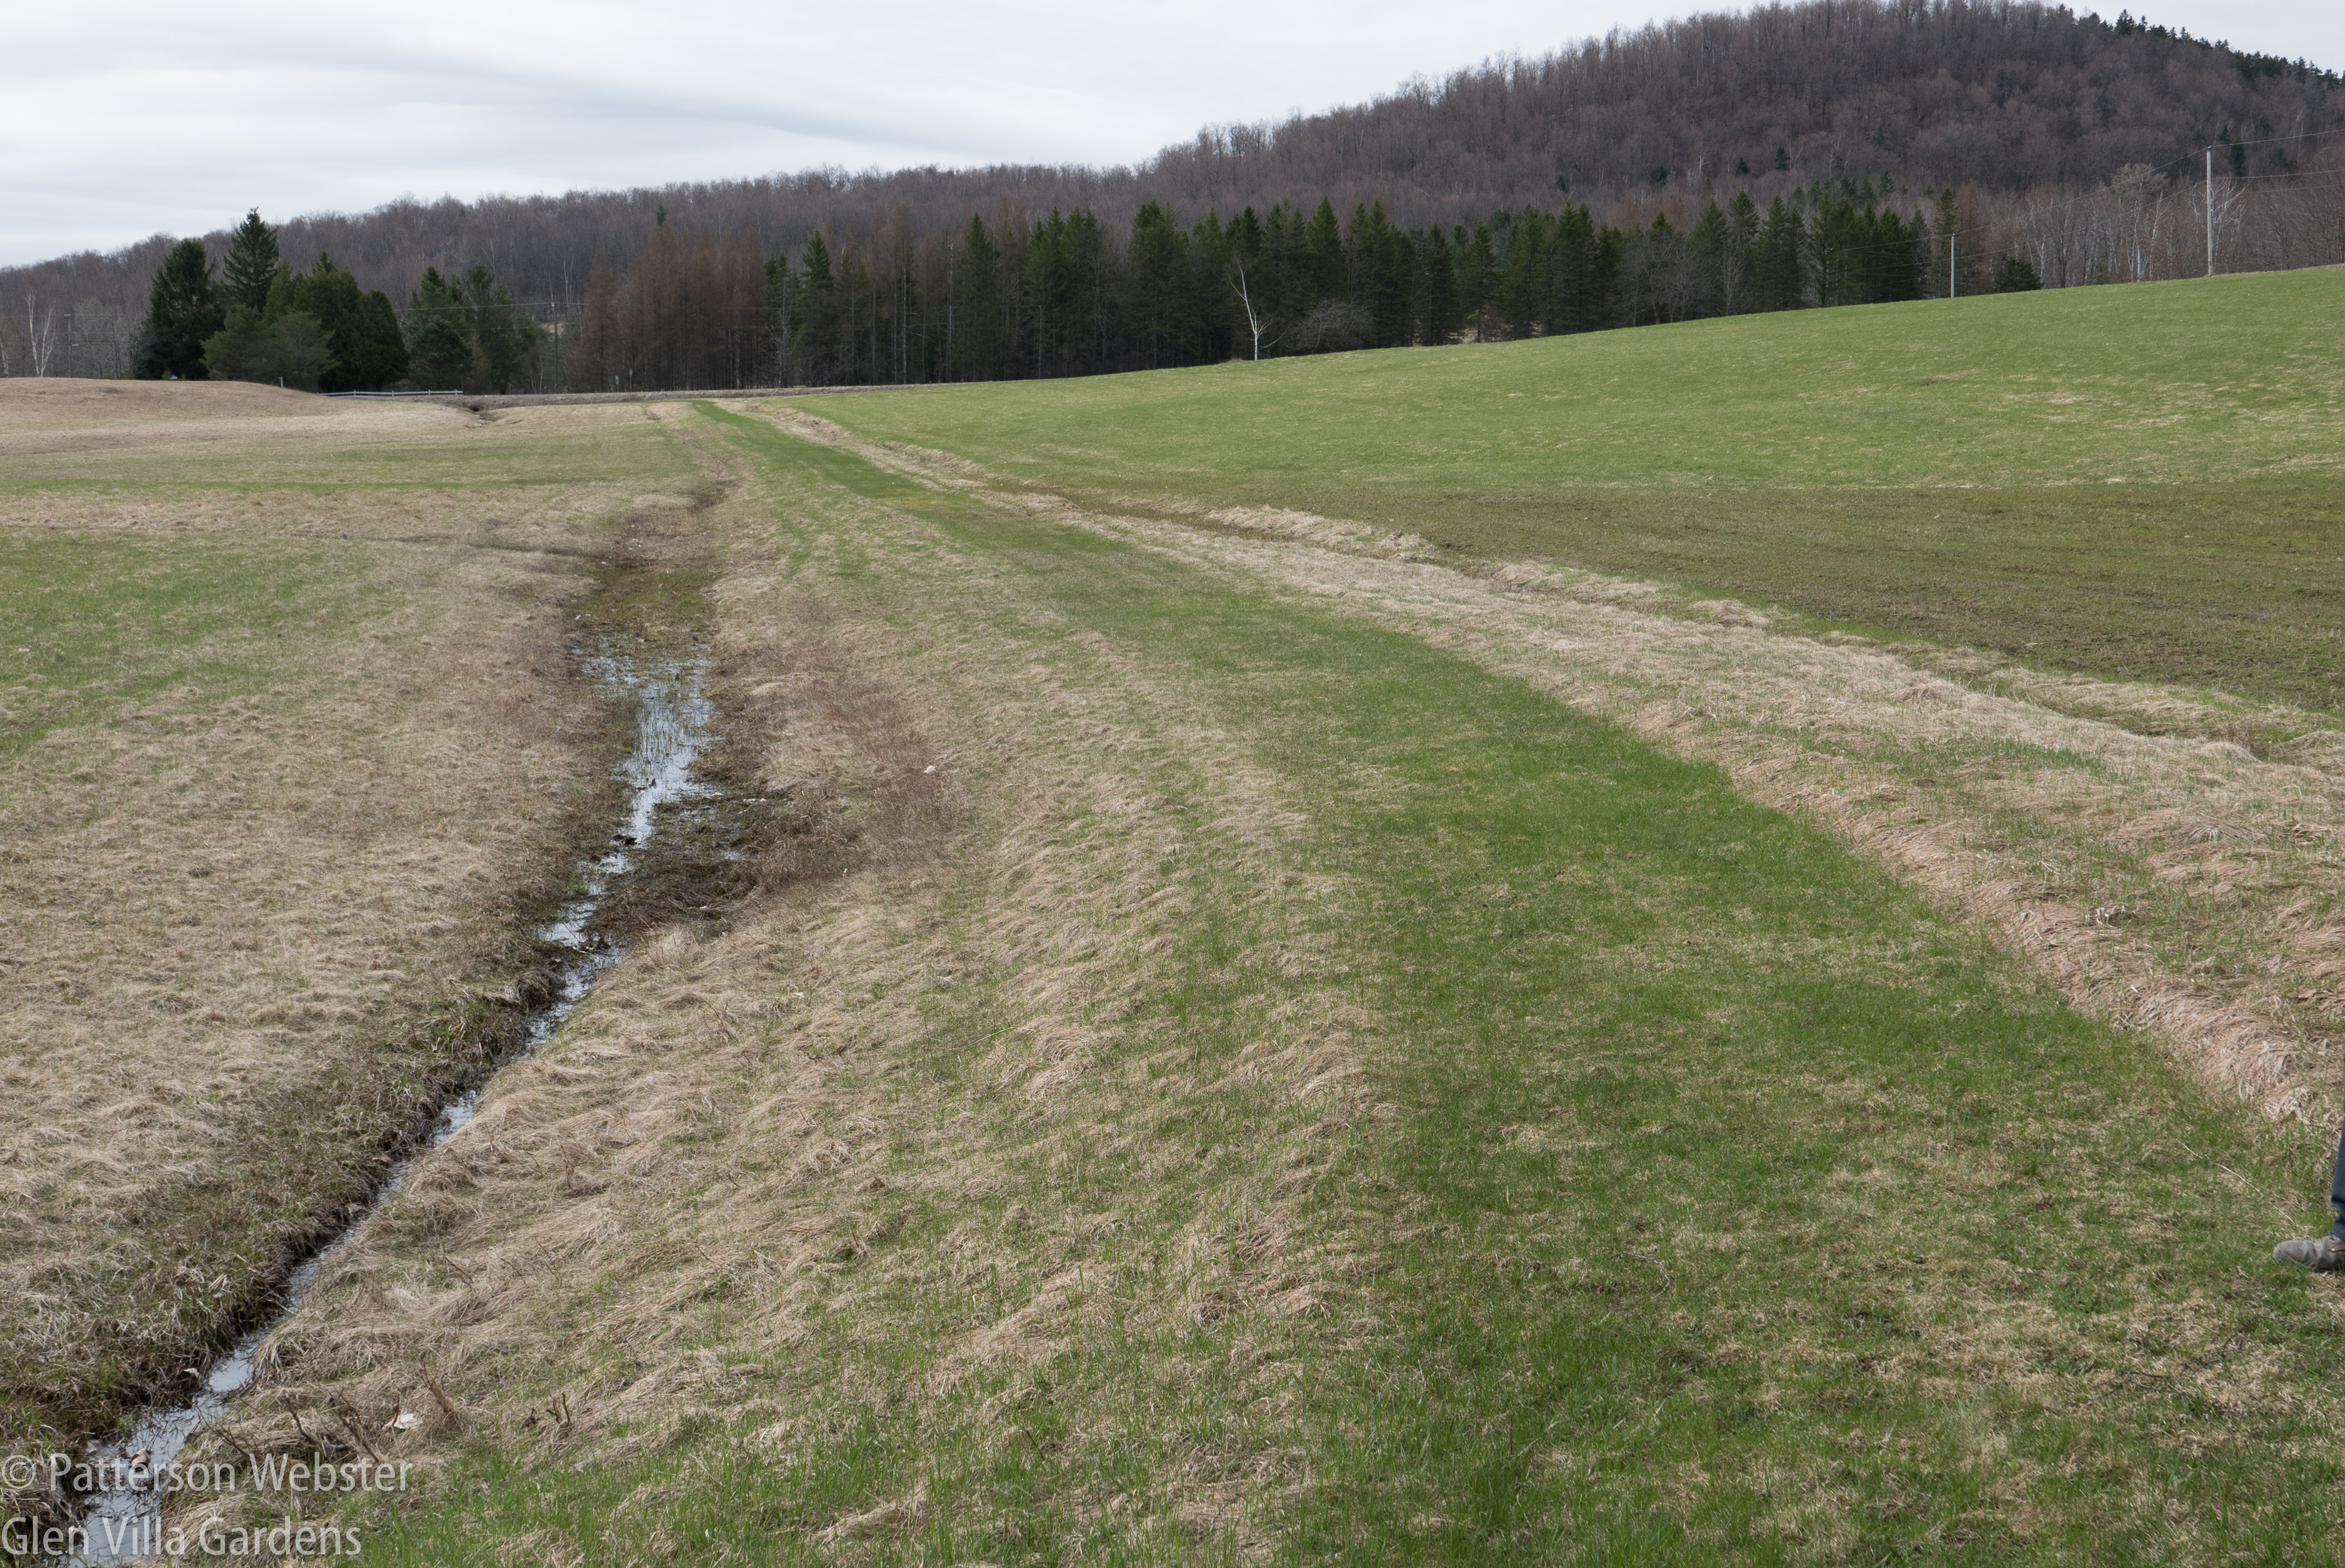 This path was a convenient short cut across a flat farm field.